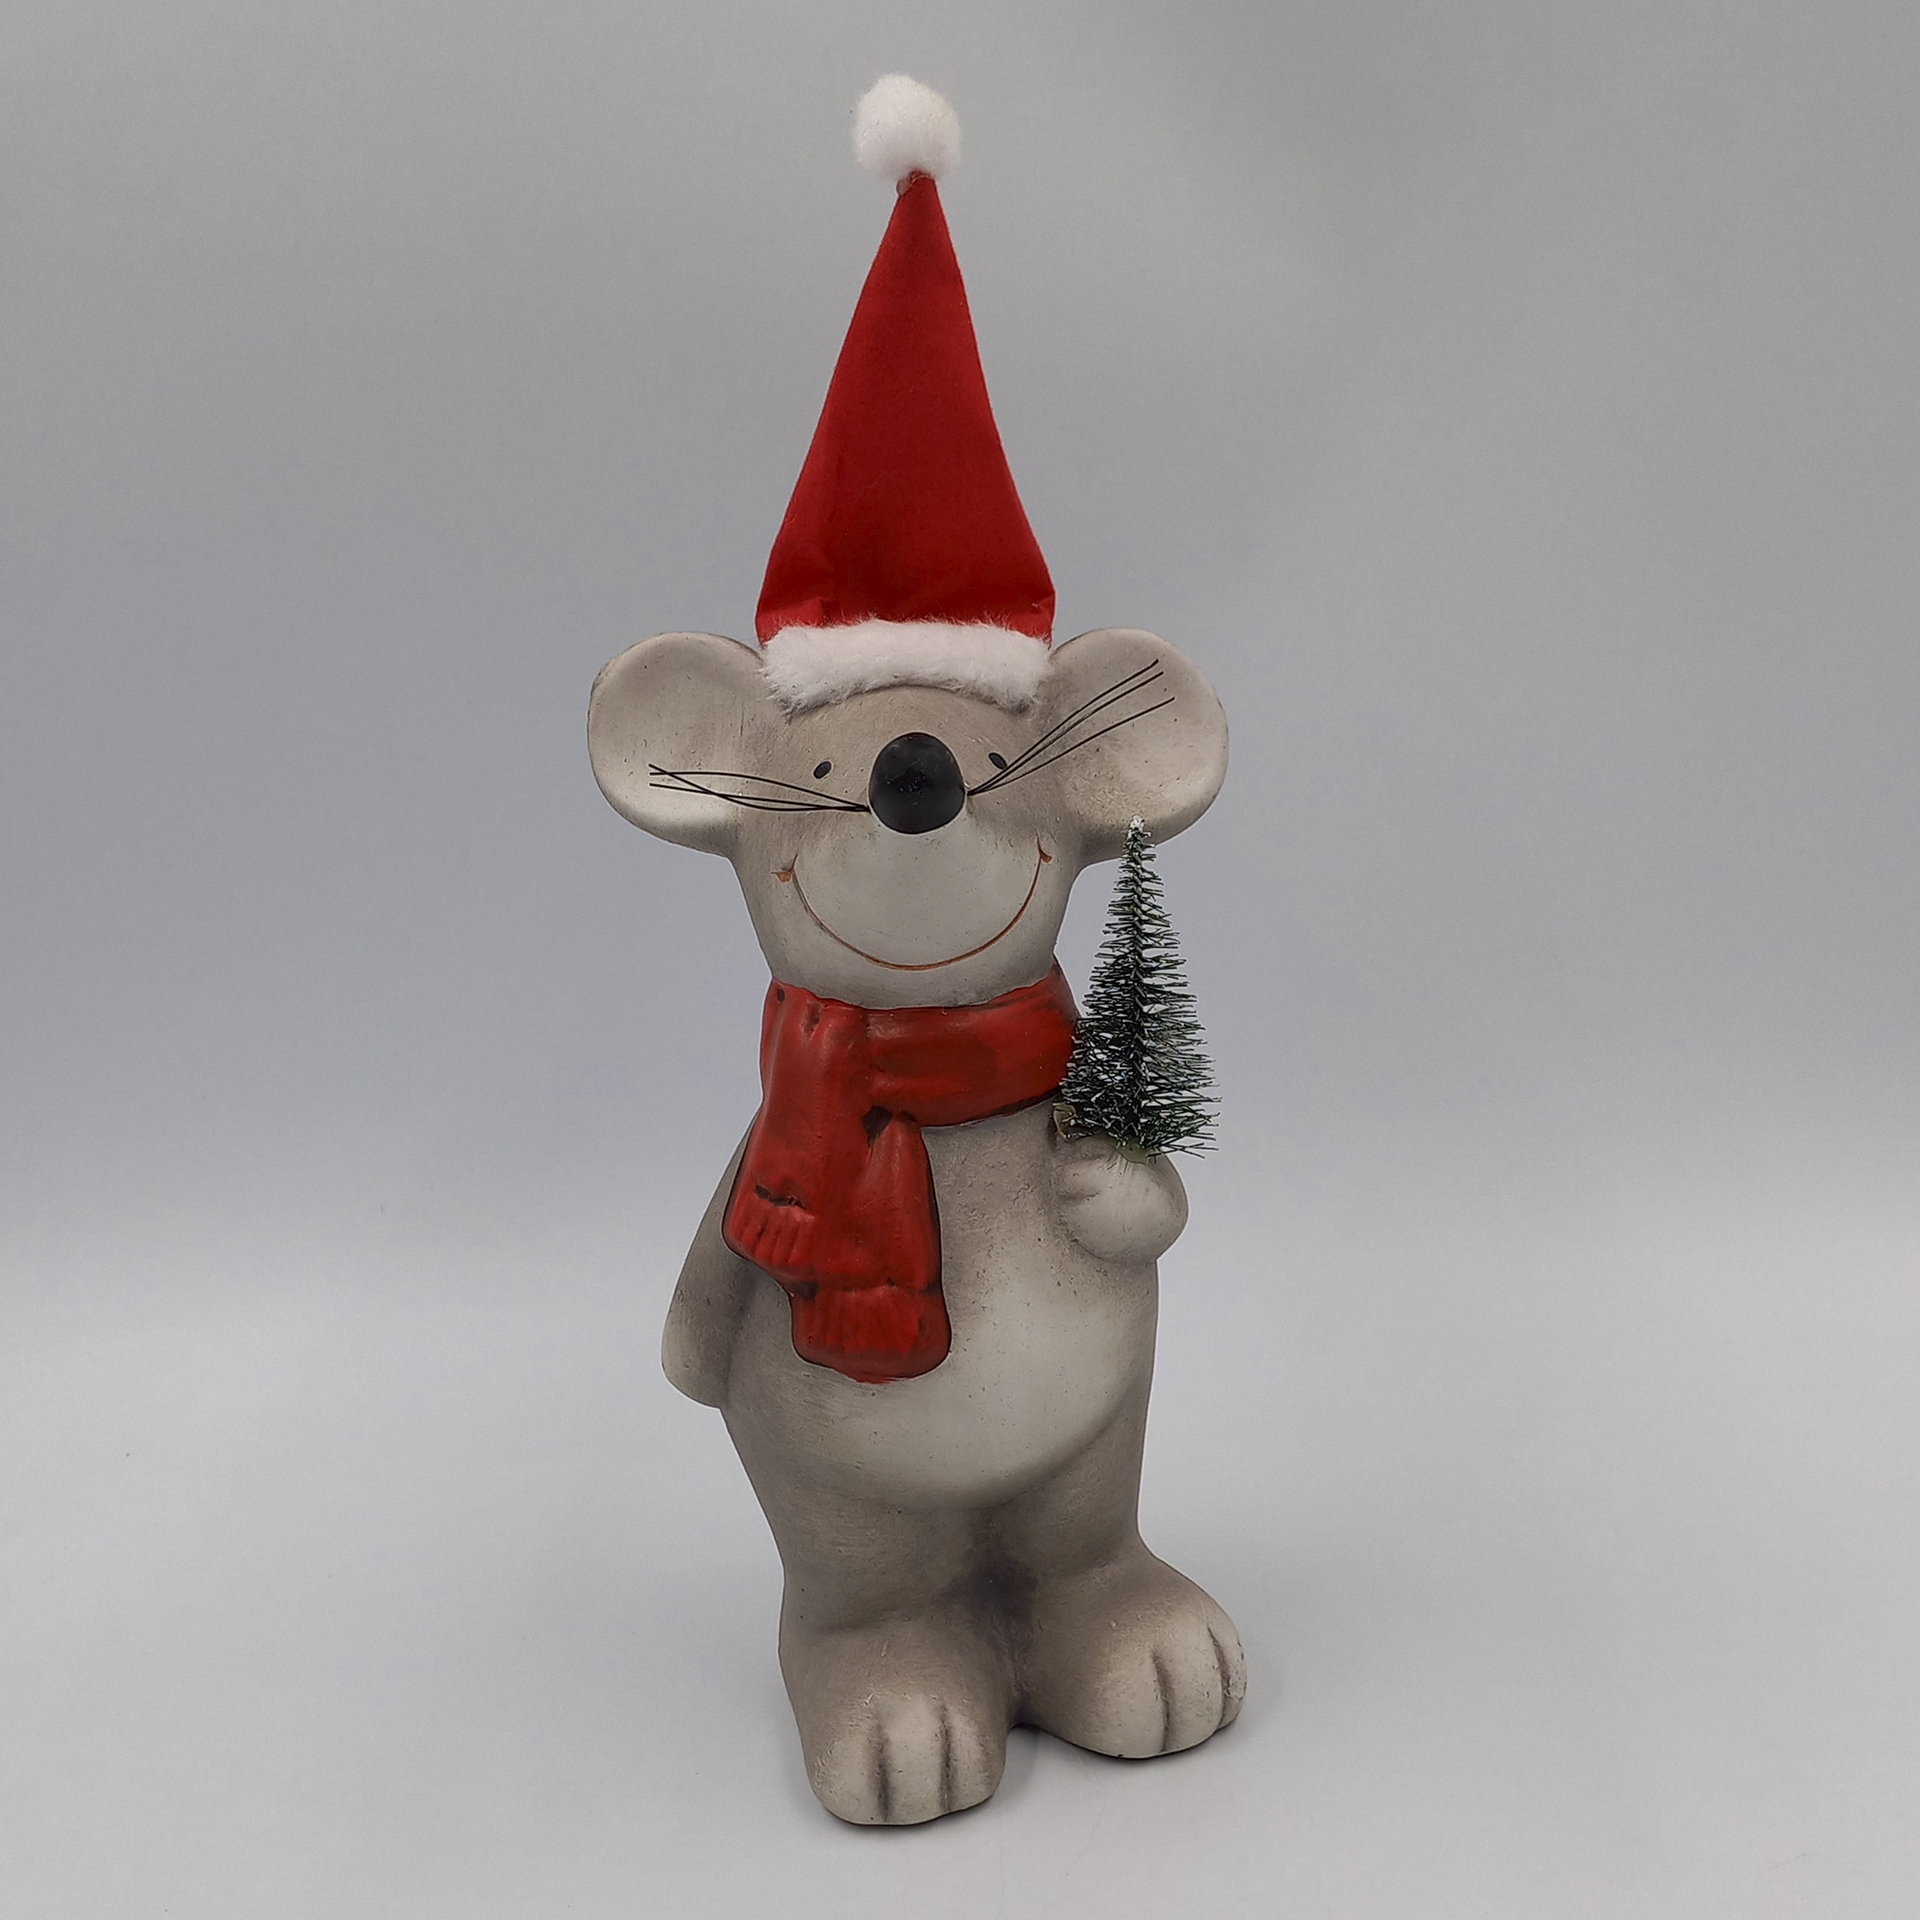 Maus als Nikolaus mit roter Zipfelmütze, rotem Schal und Weihnachtsbaum